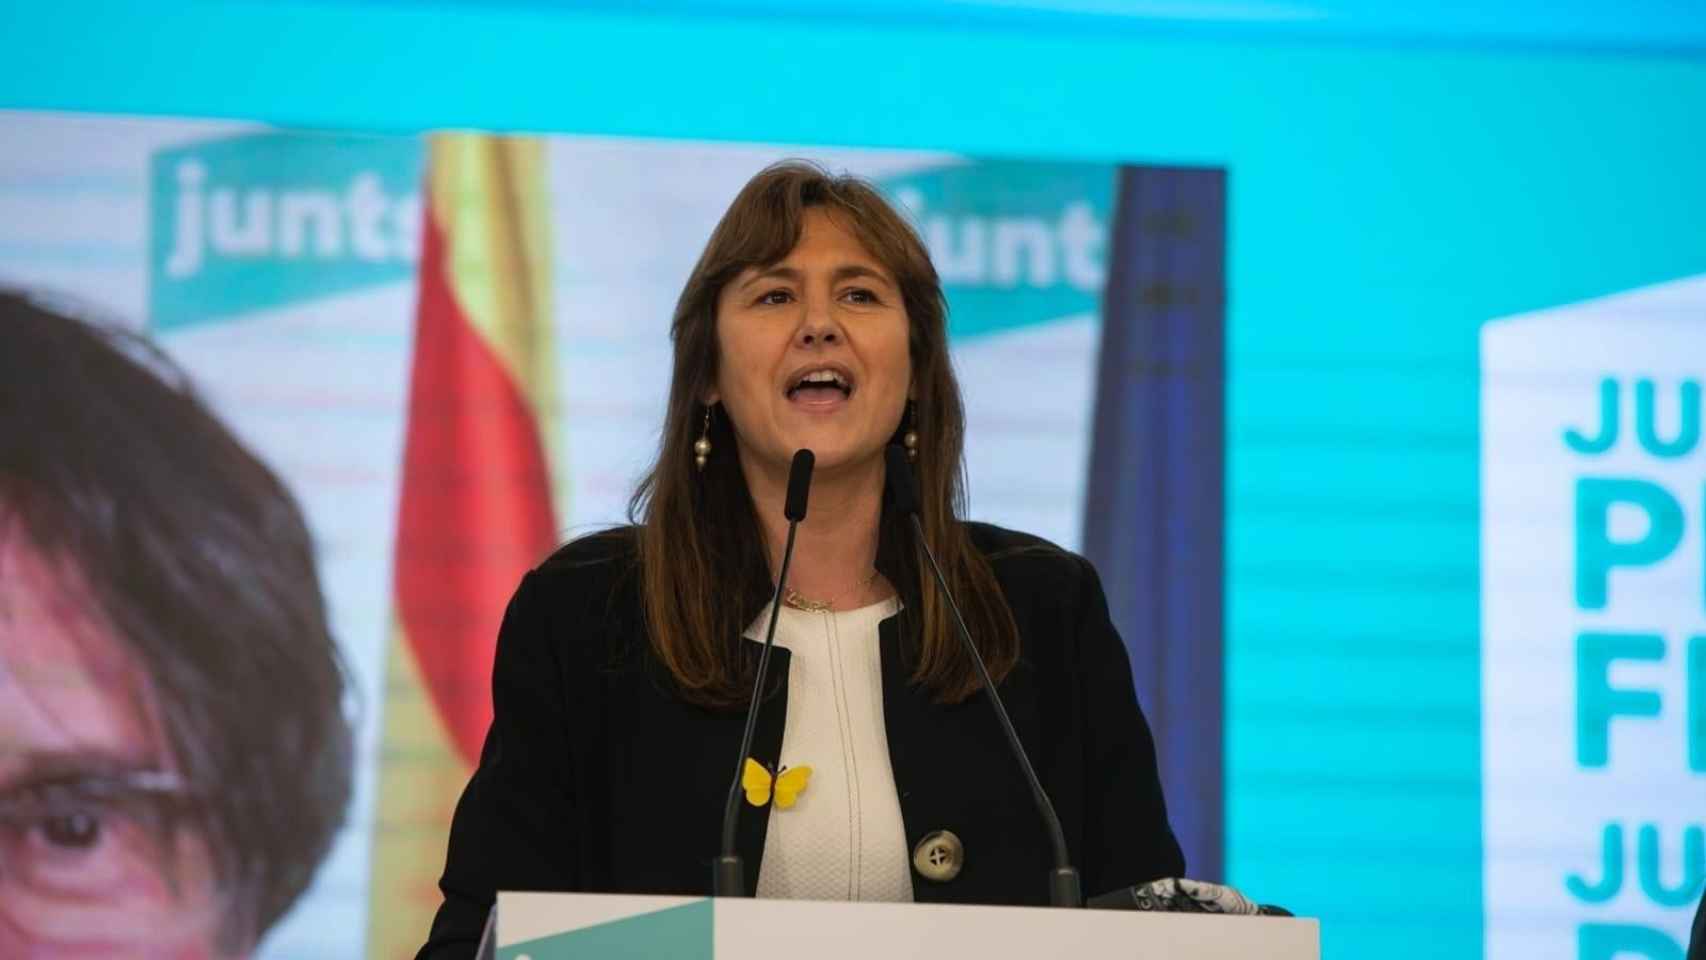 Laura Borràs, cara visible de JxCat, con la imagen de Carles Puigdemont a su espalda / EUROPA PRESS